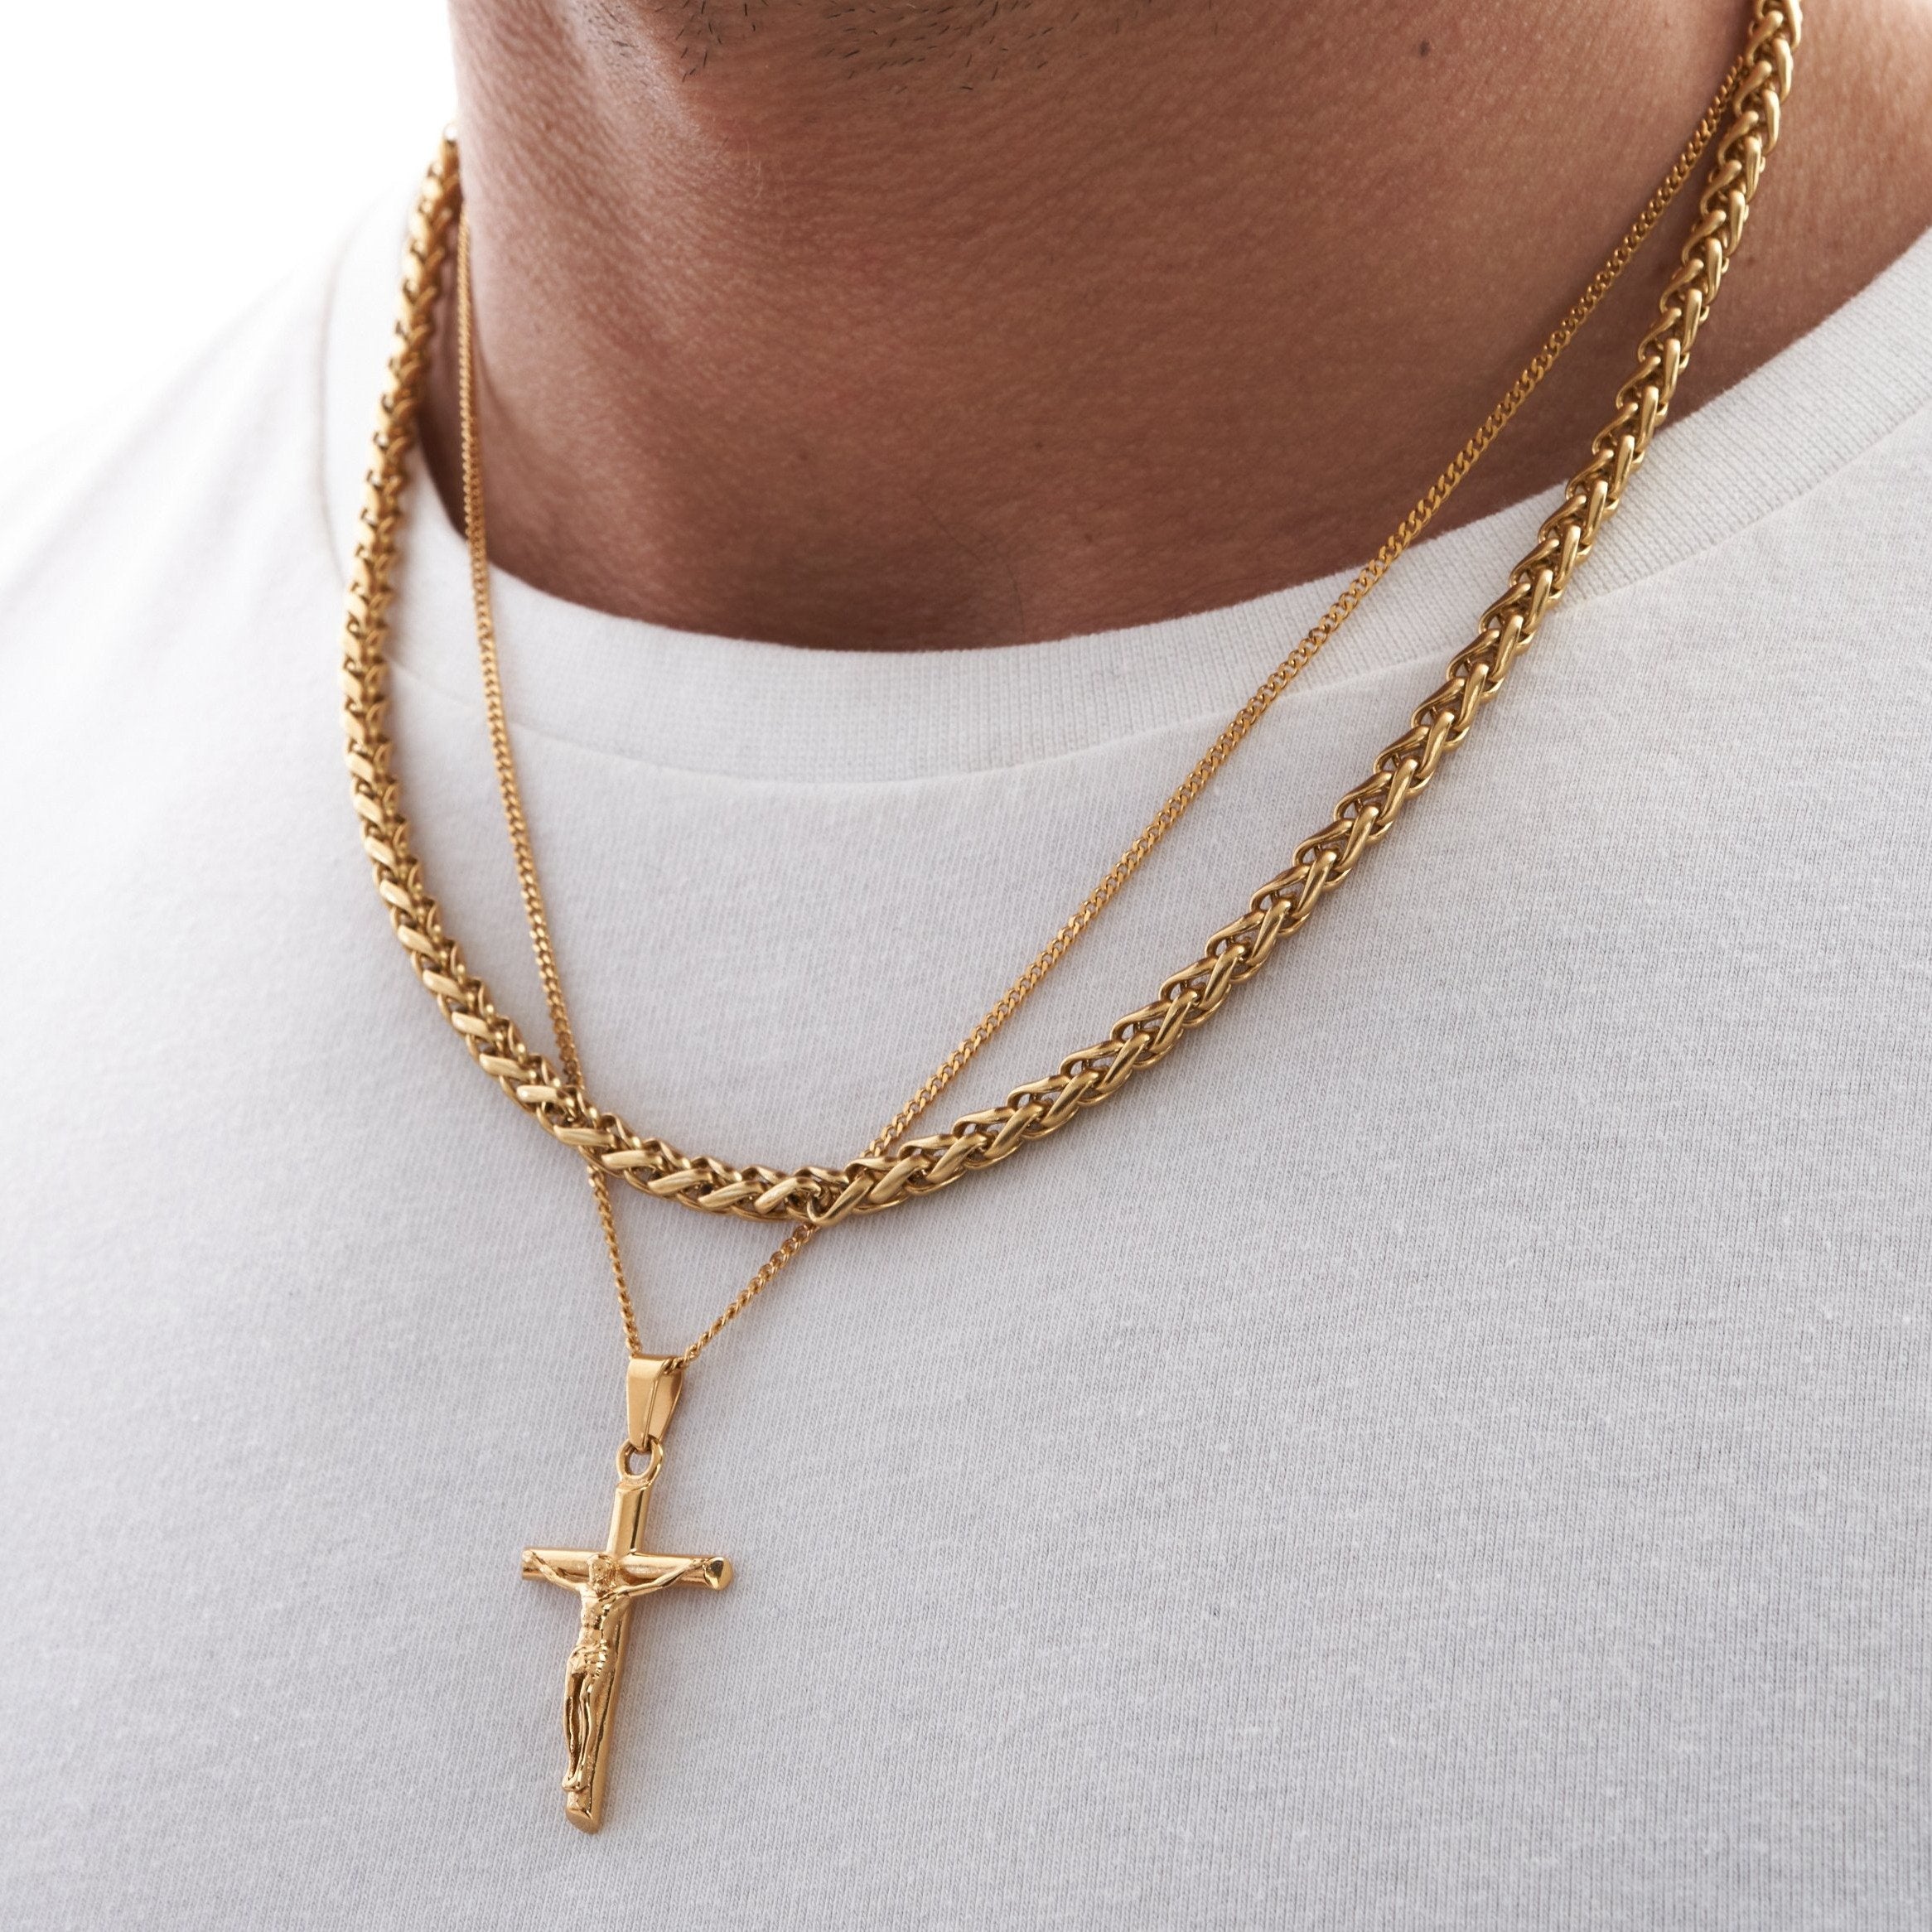 Crucifix (Gold)